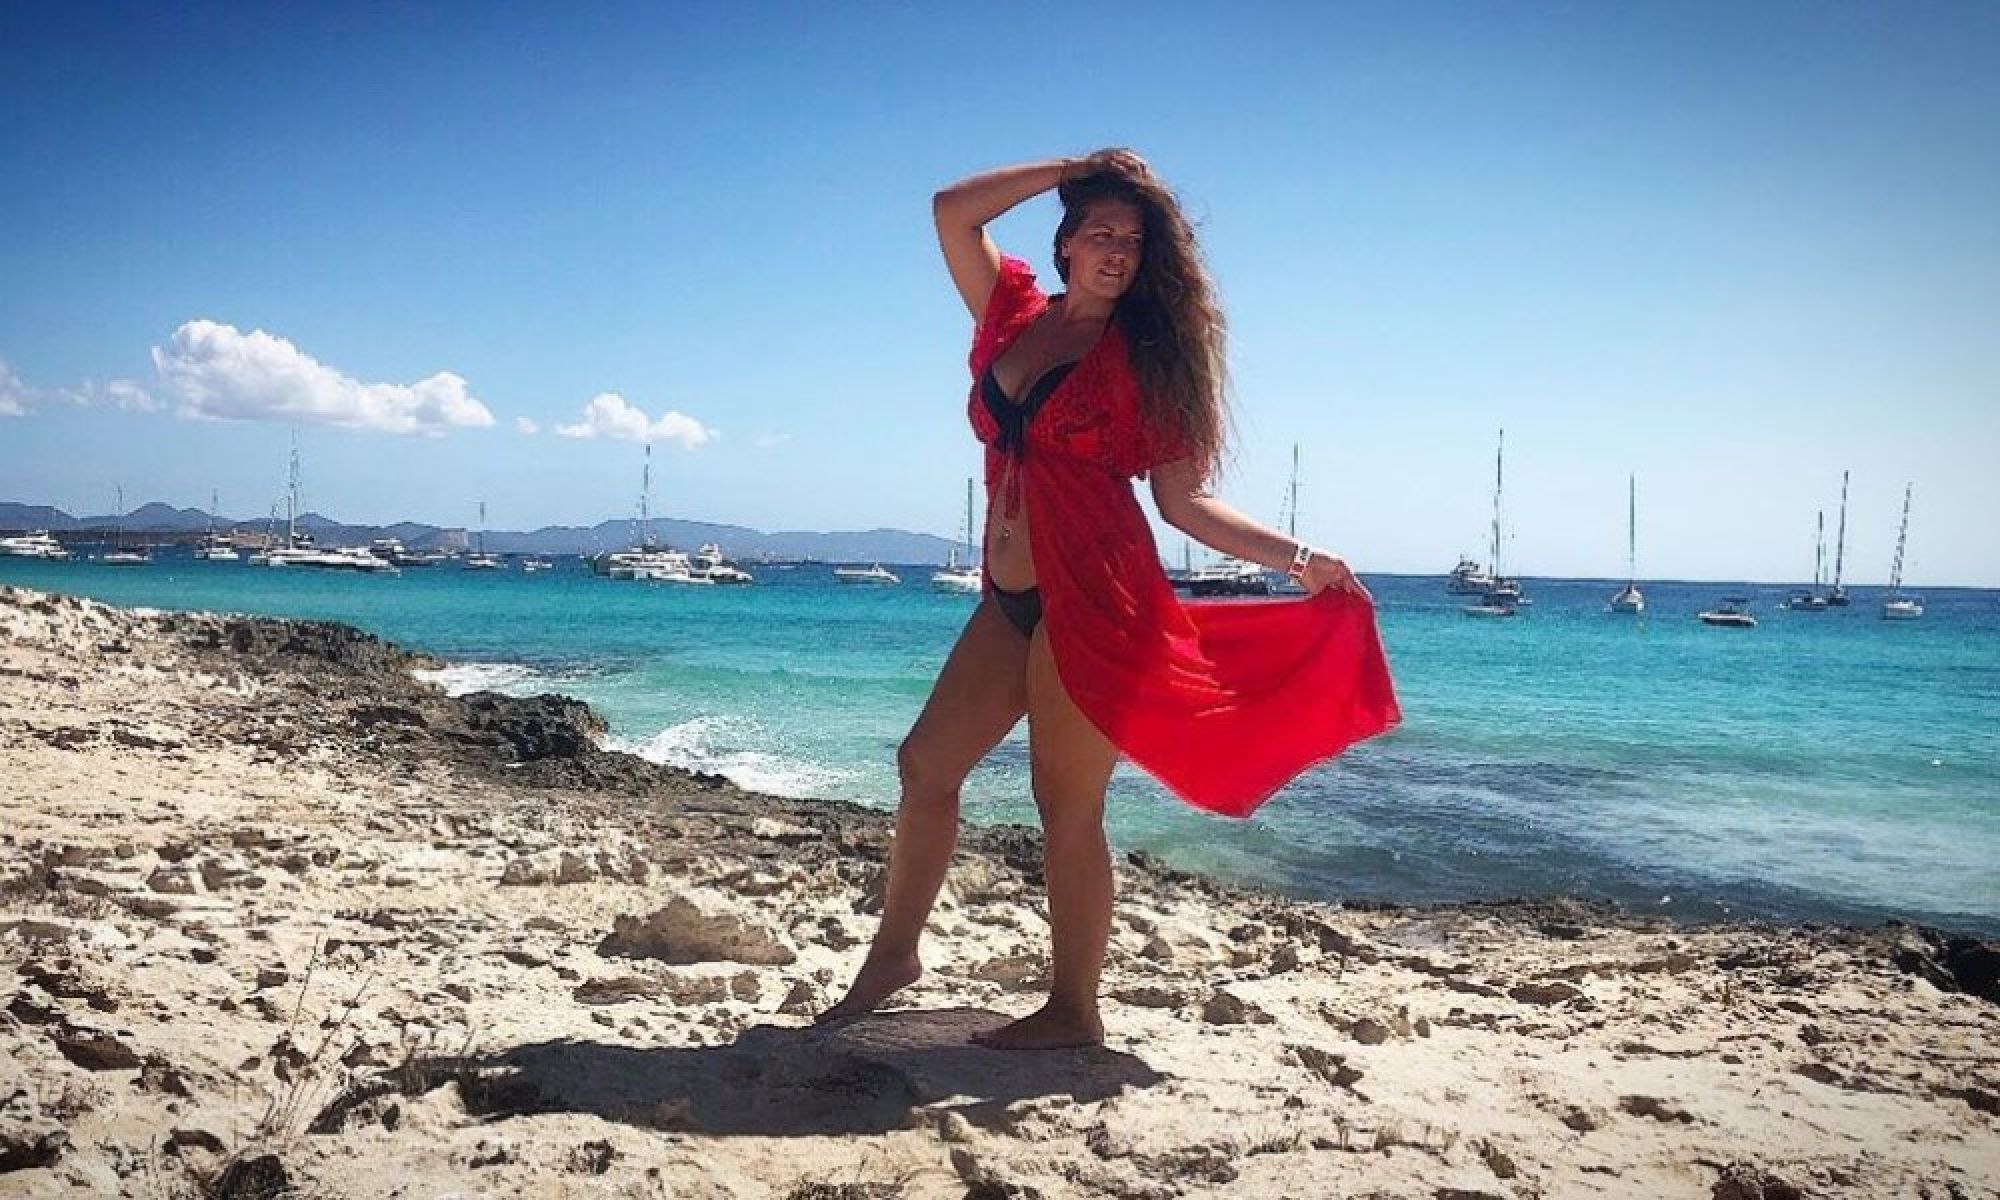 Участница шоу "Мисс Франция" обвинила организаторов в несправедливом отстранении за лишний вес